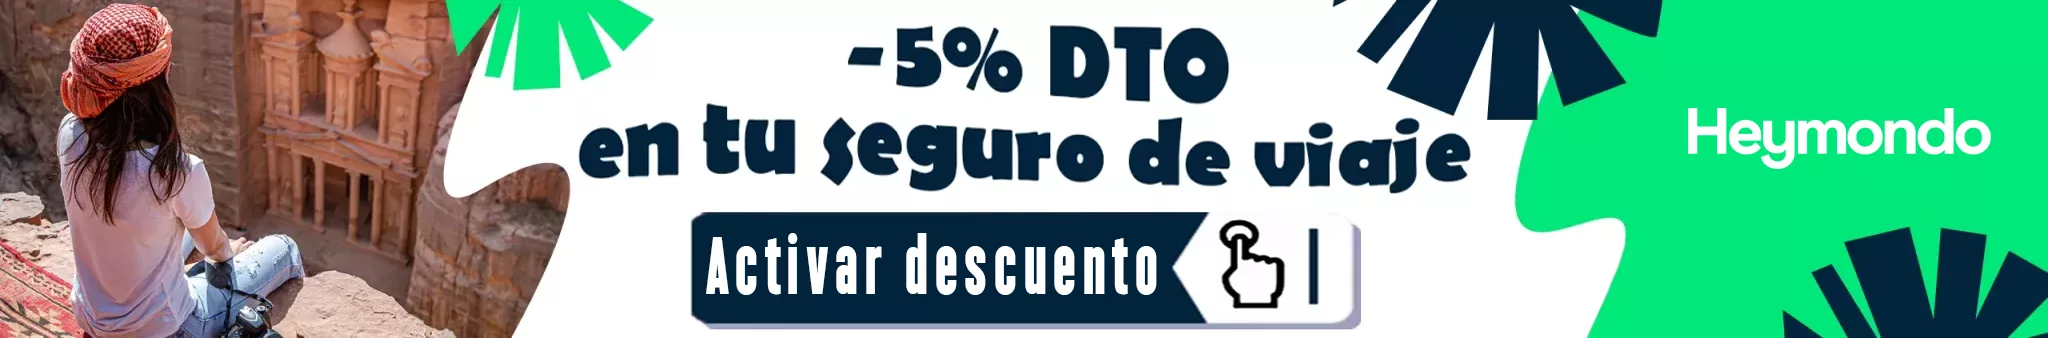 Heymondo Banner Descuento 5%